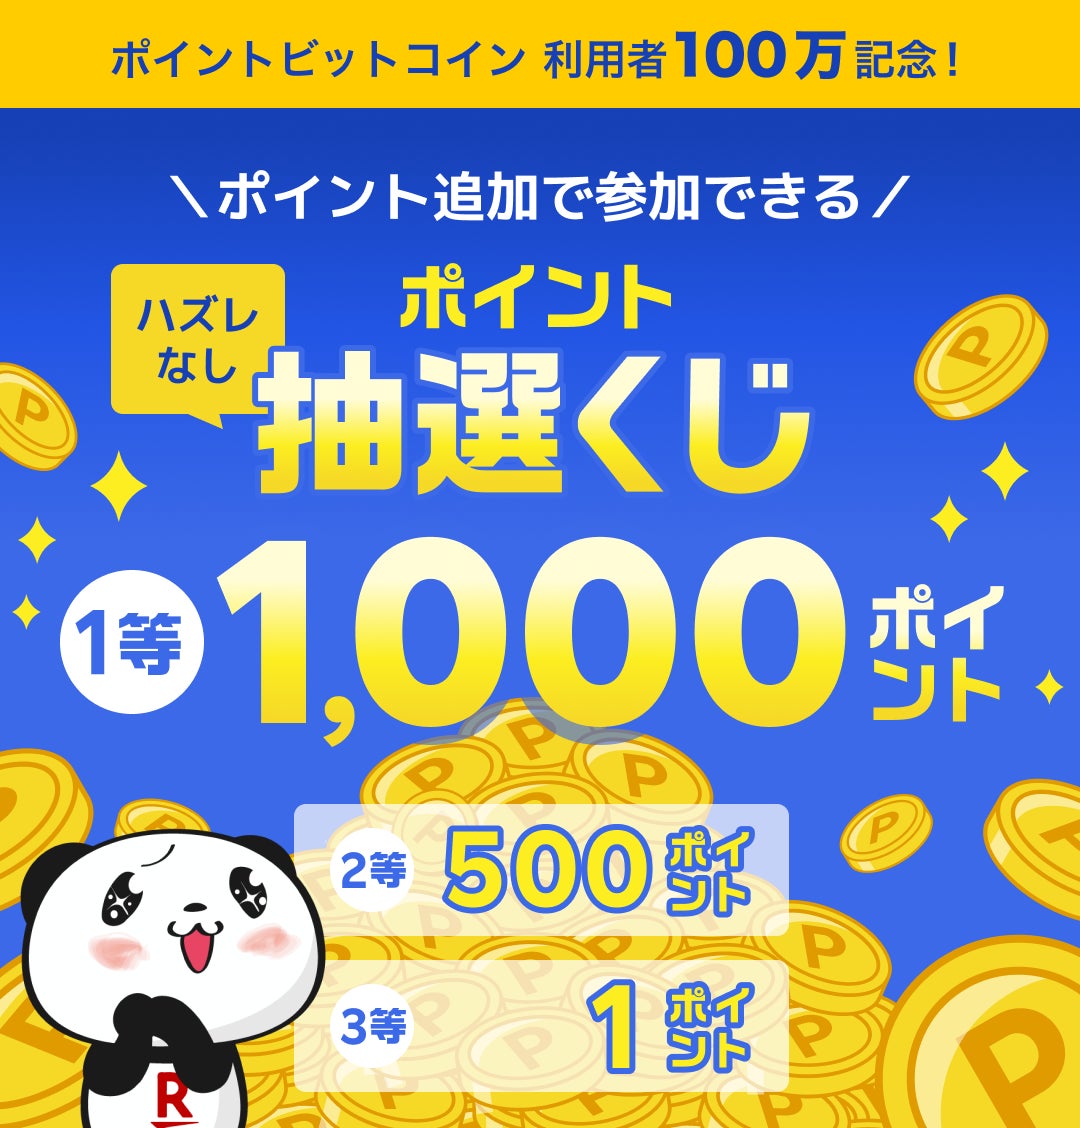 「ポイントビットコイン by 楽天PointClub」、ユーザー数が100万人を突破